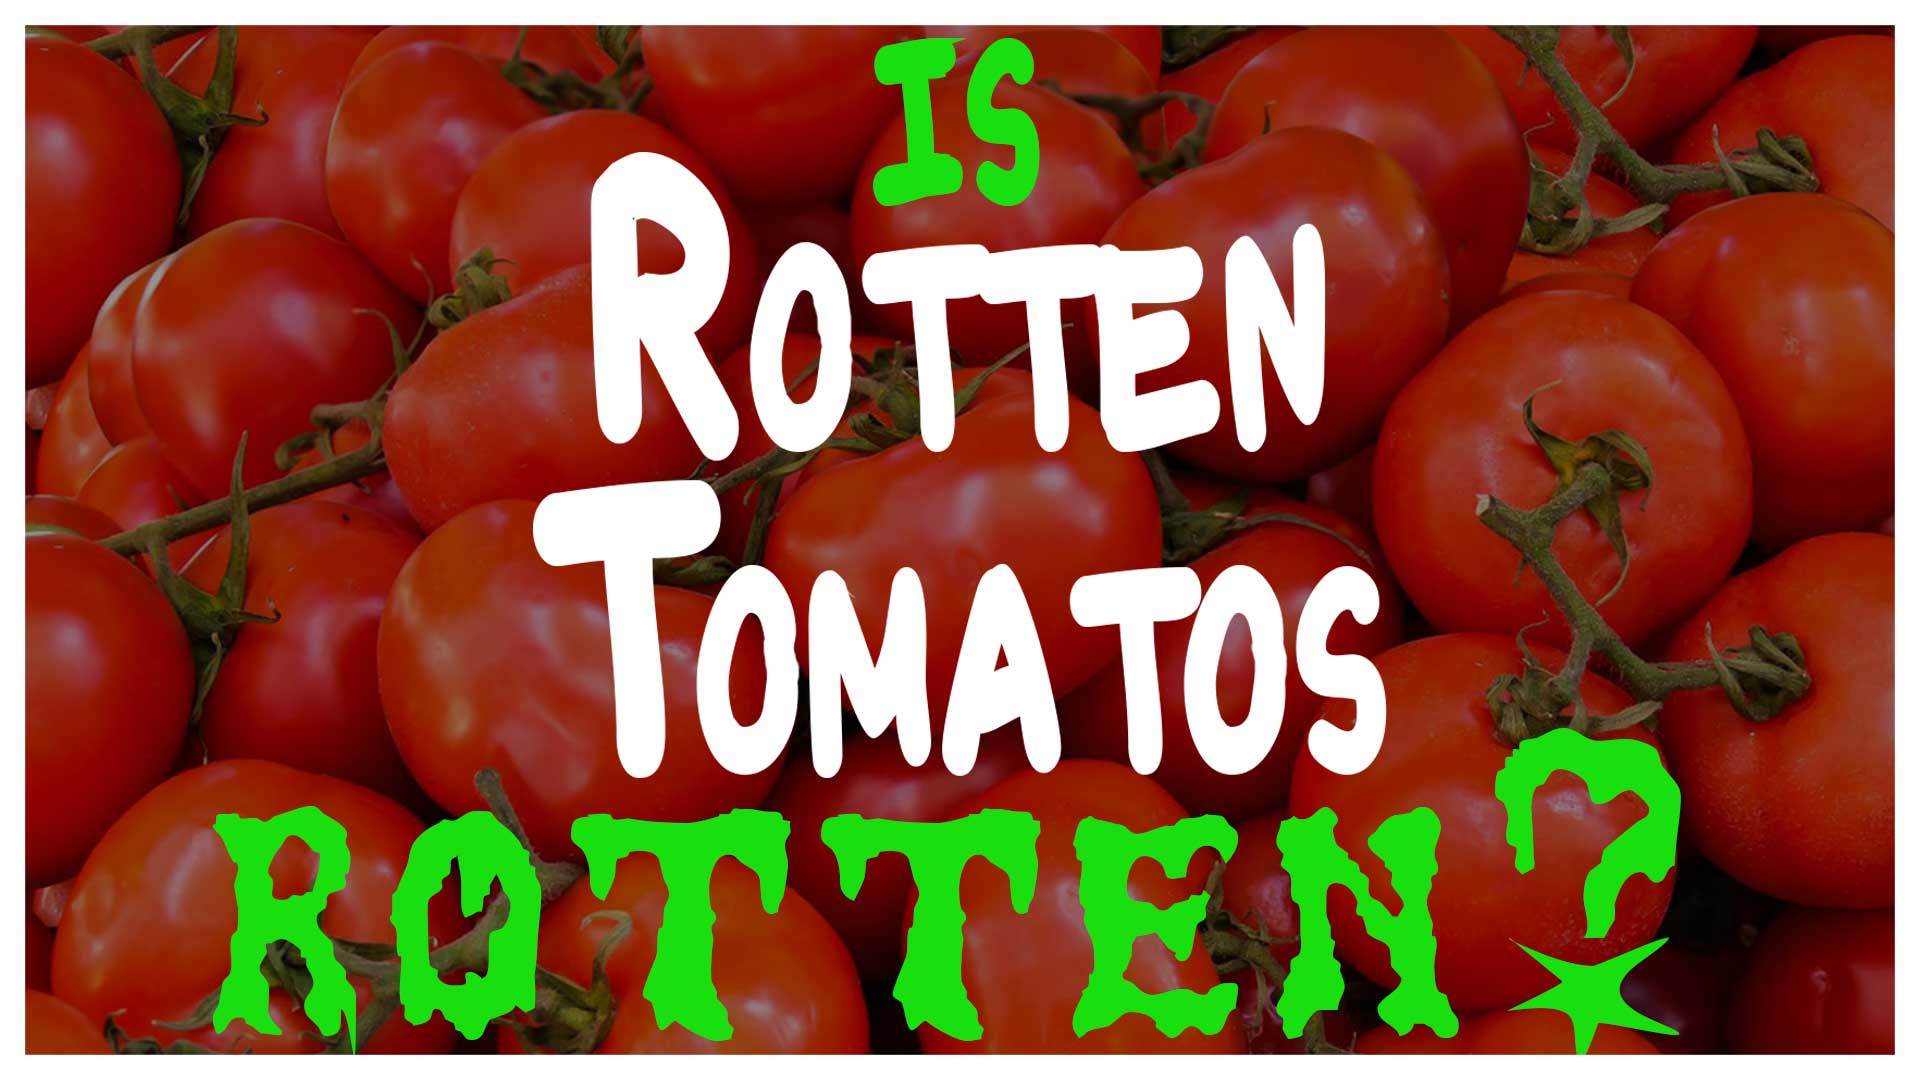 https://www.triplezerofilms.com/wp-content/uploads/2021/03/is-rotten-tomatoes-rotten.jpg